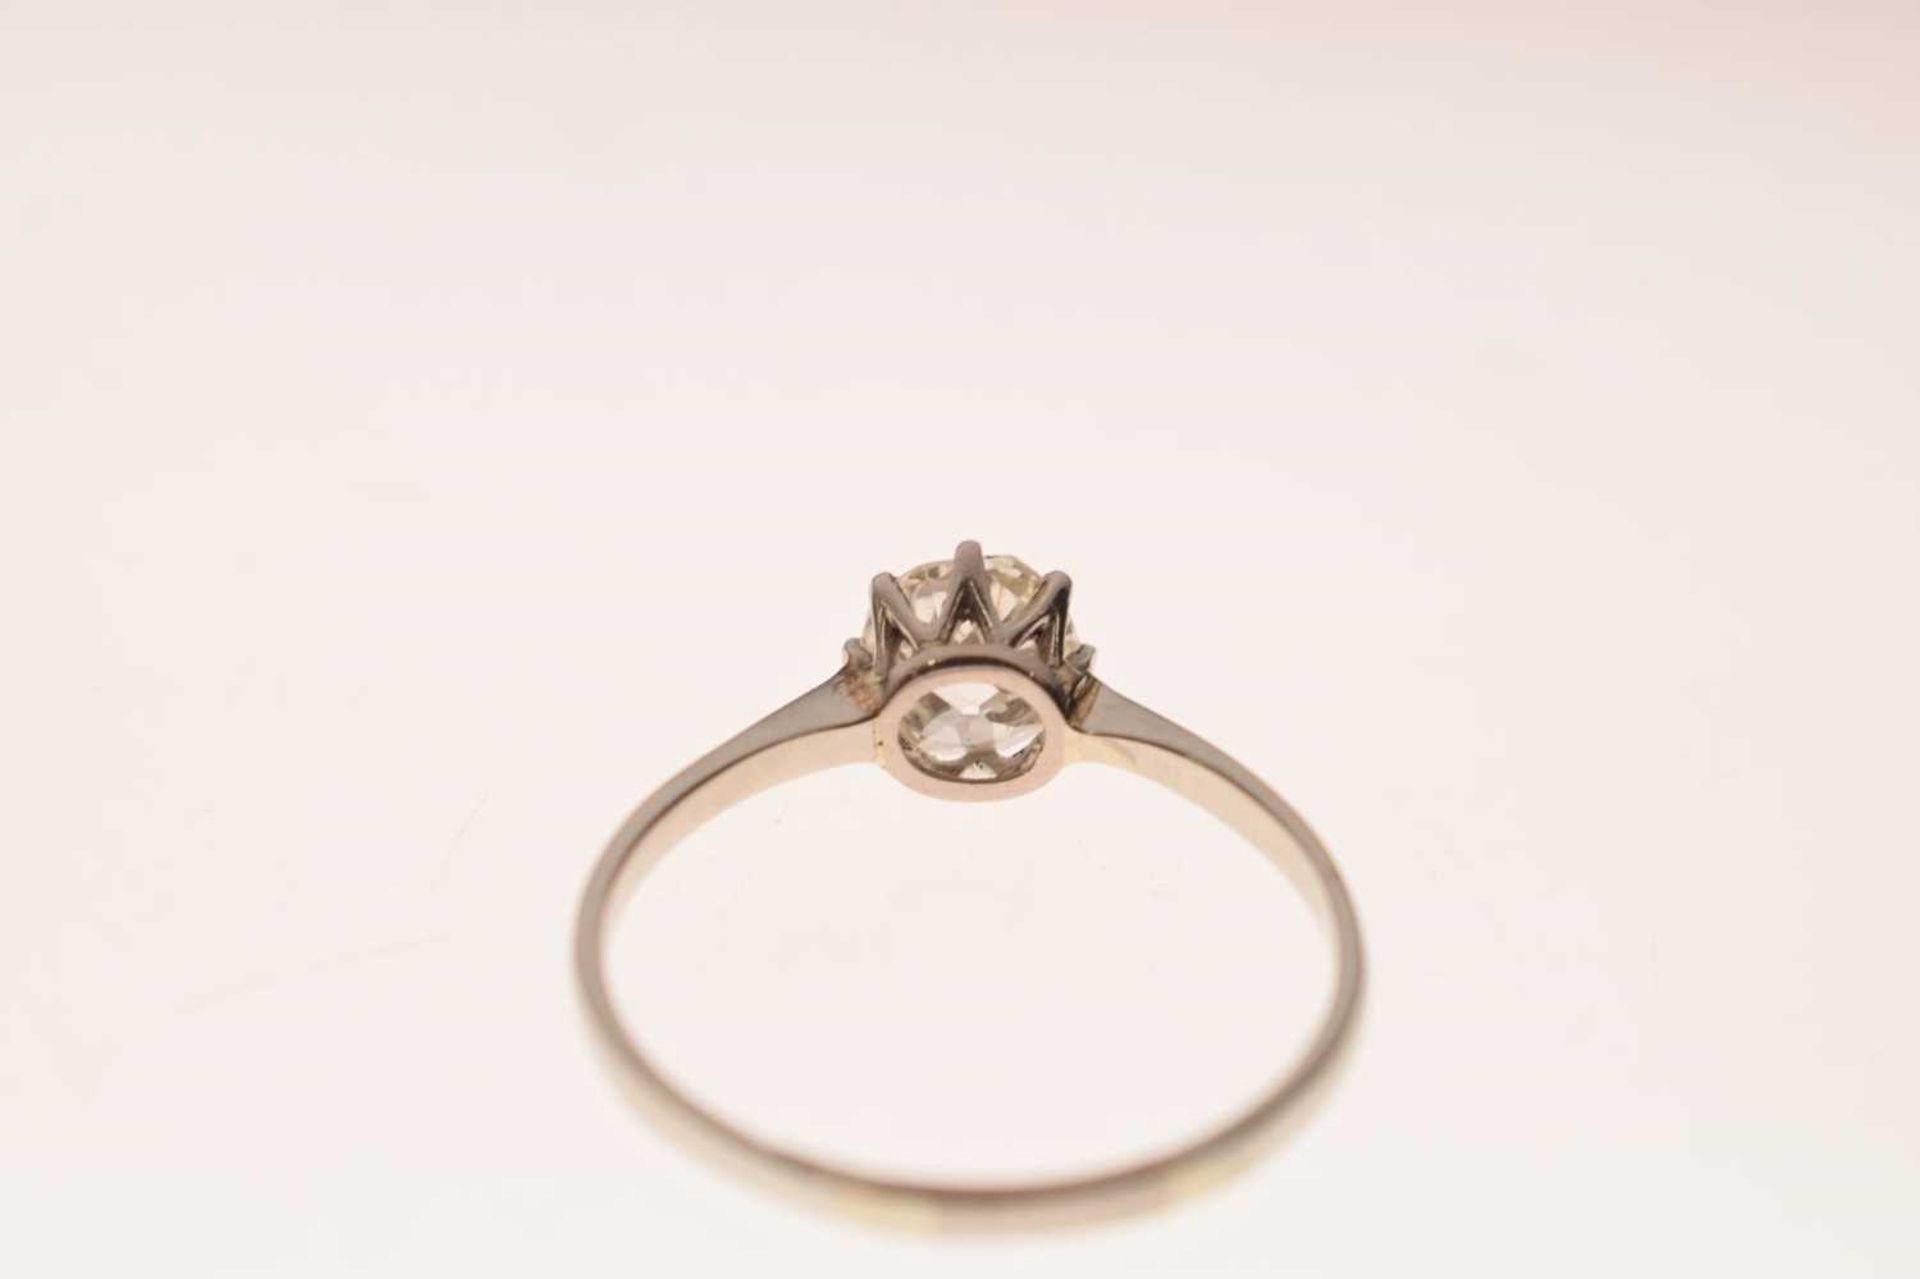 Diamond solitaire platinum ring - Image 4 of 7